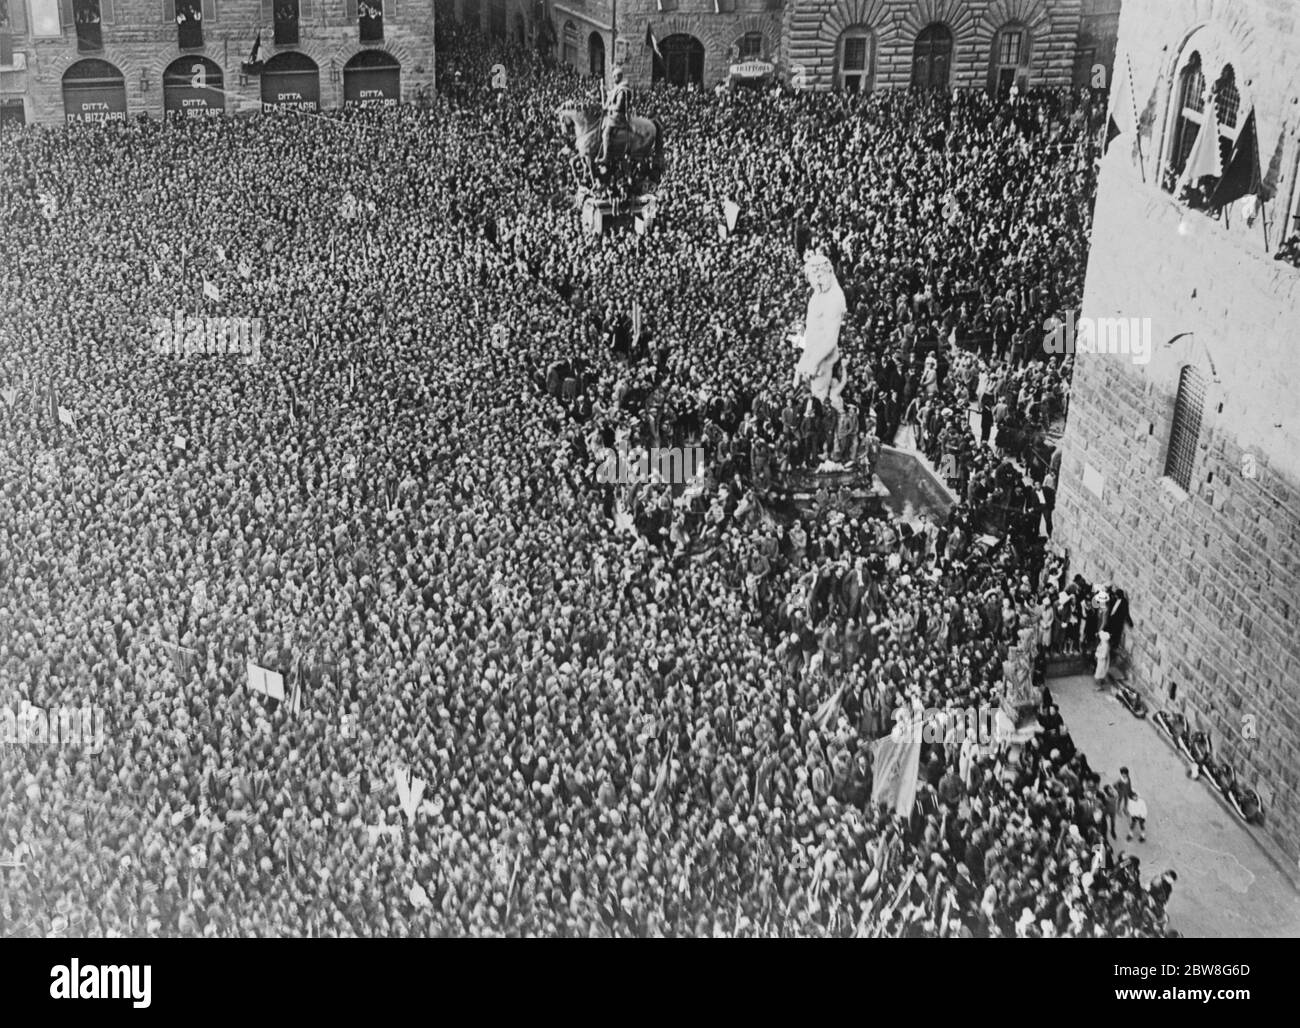 Oltre 100,000 persone ascoltano un fioso discorso di Mussolini . Il signor Benito Mussolini ha pronunciato un discorso fioso a un raduno di oltre 100,000 persone in Piazza della Signoria , Firenze . Una vista della folla enorme . 21 maggio 1930 Foto Stock